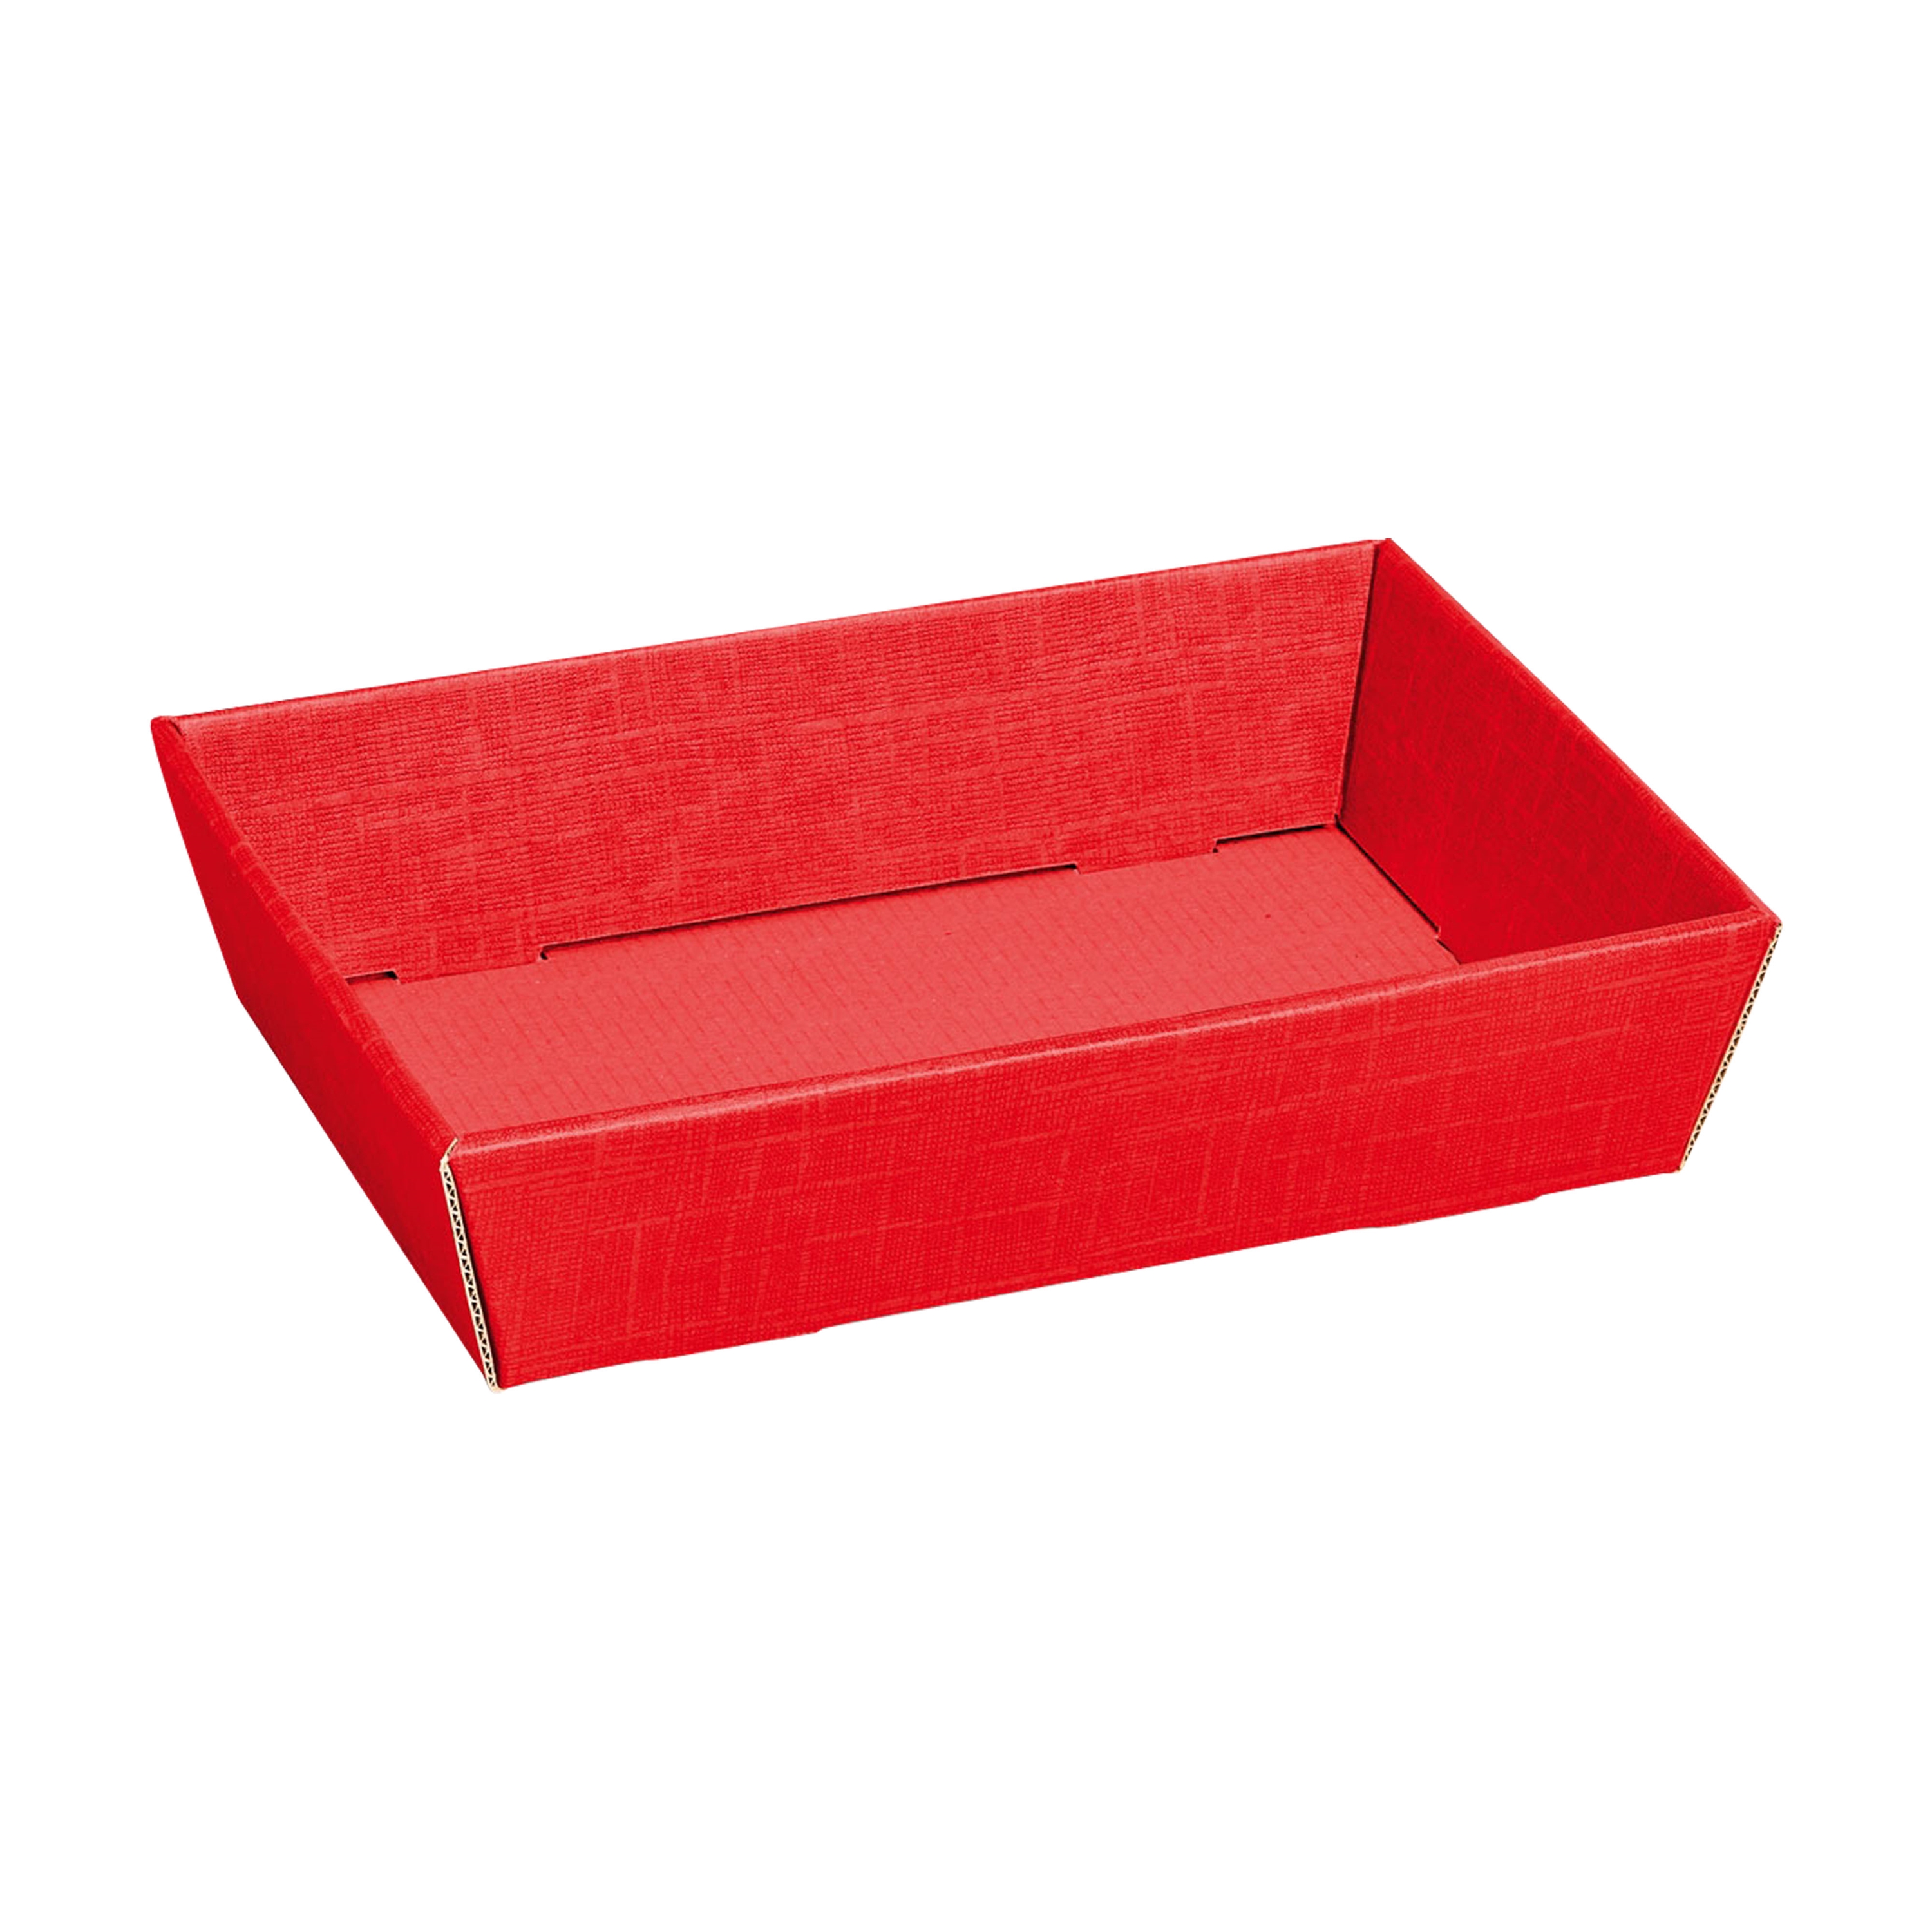 Afbeelding van Ds à 25 kartonnen bak 22x15x5,5 cm rood (tucl)